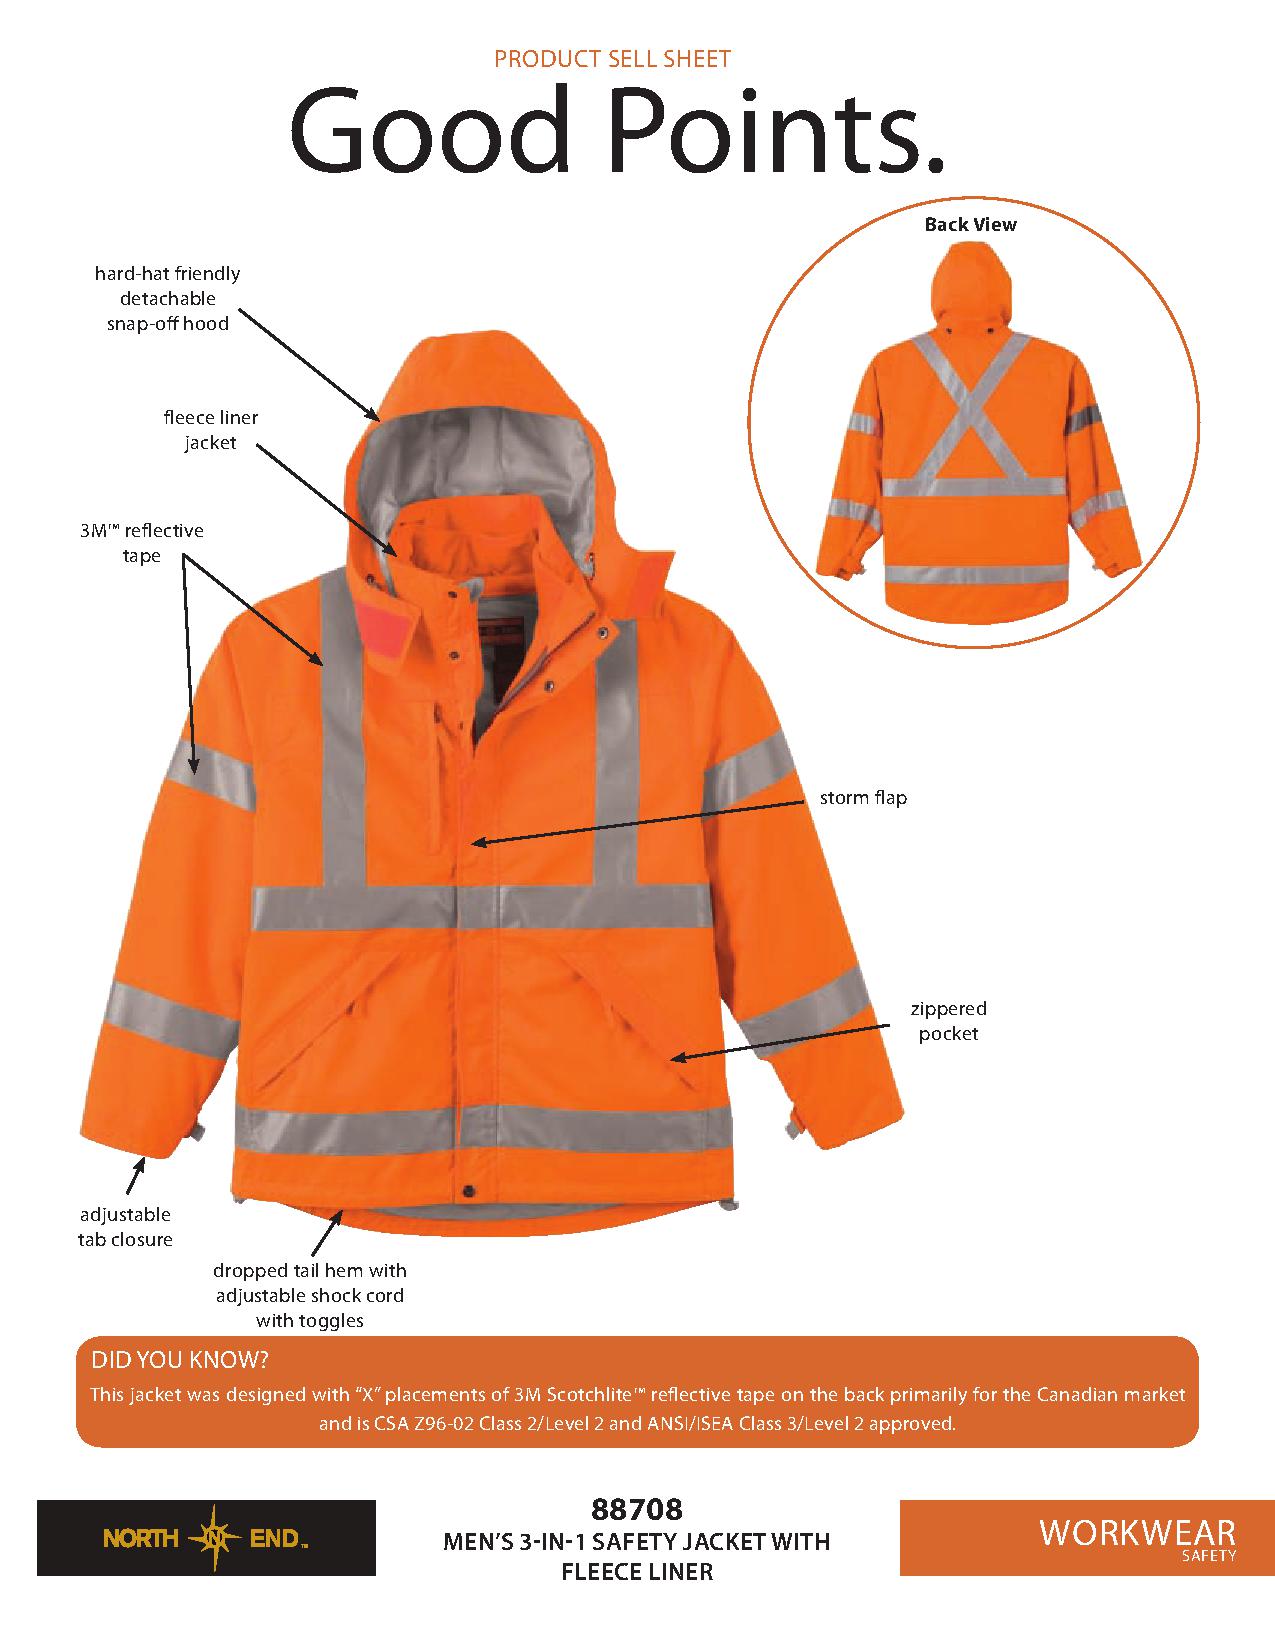 Ash City UTK 2 Warm.Logik 88708 - Men's 3-In-1 Safety Jacket With Fleece Liner